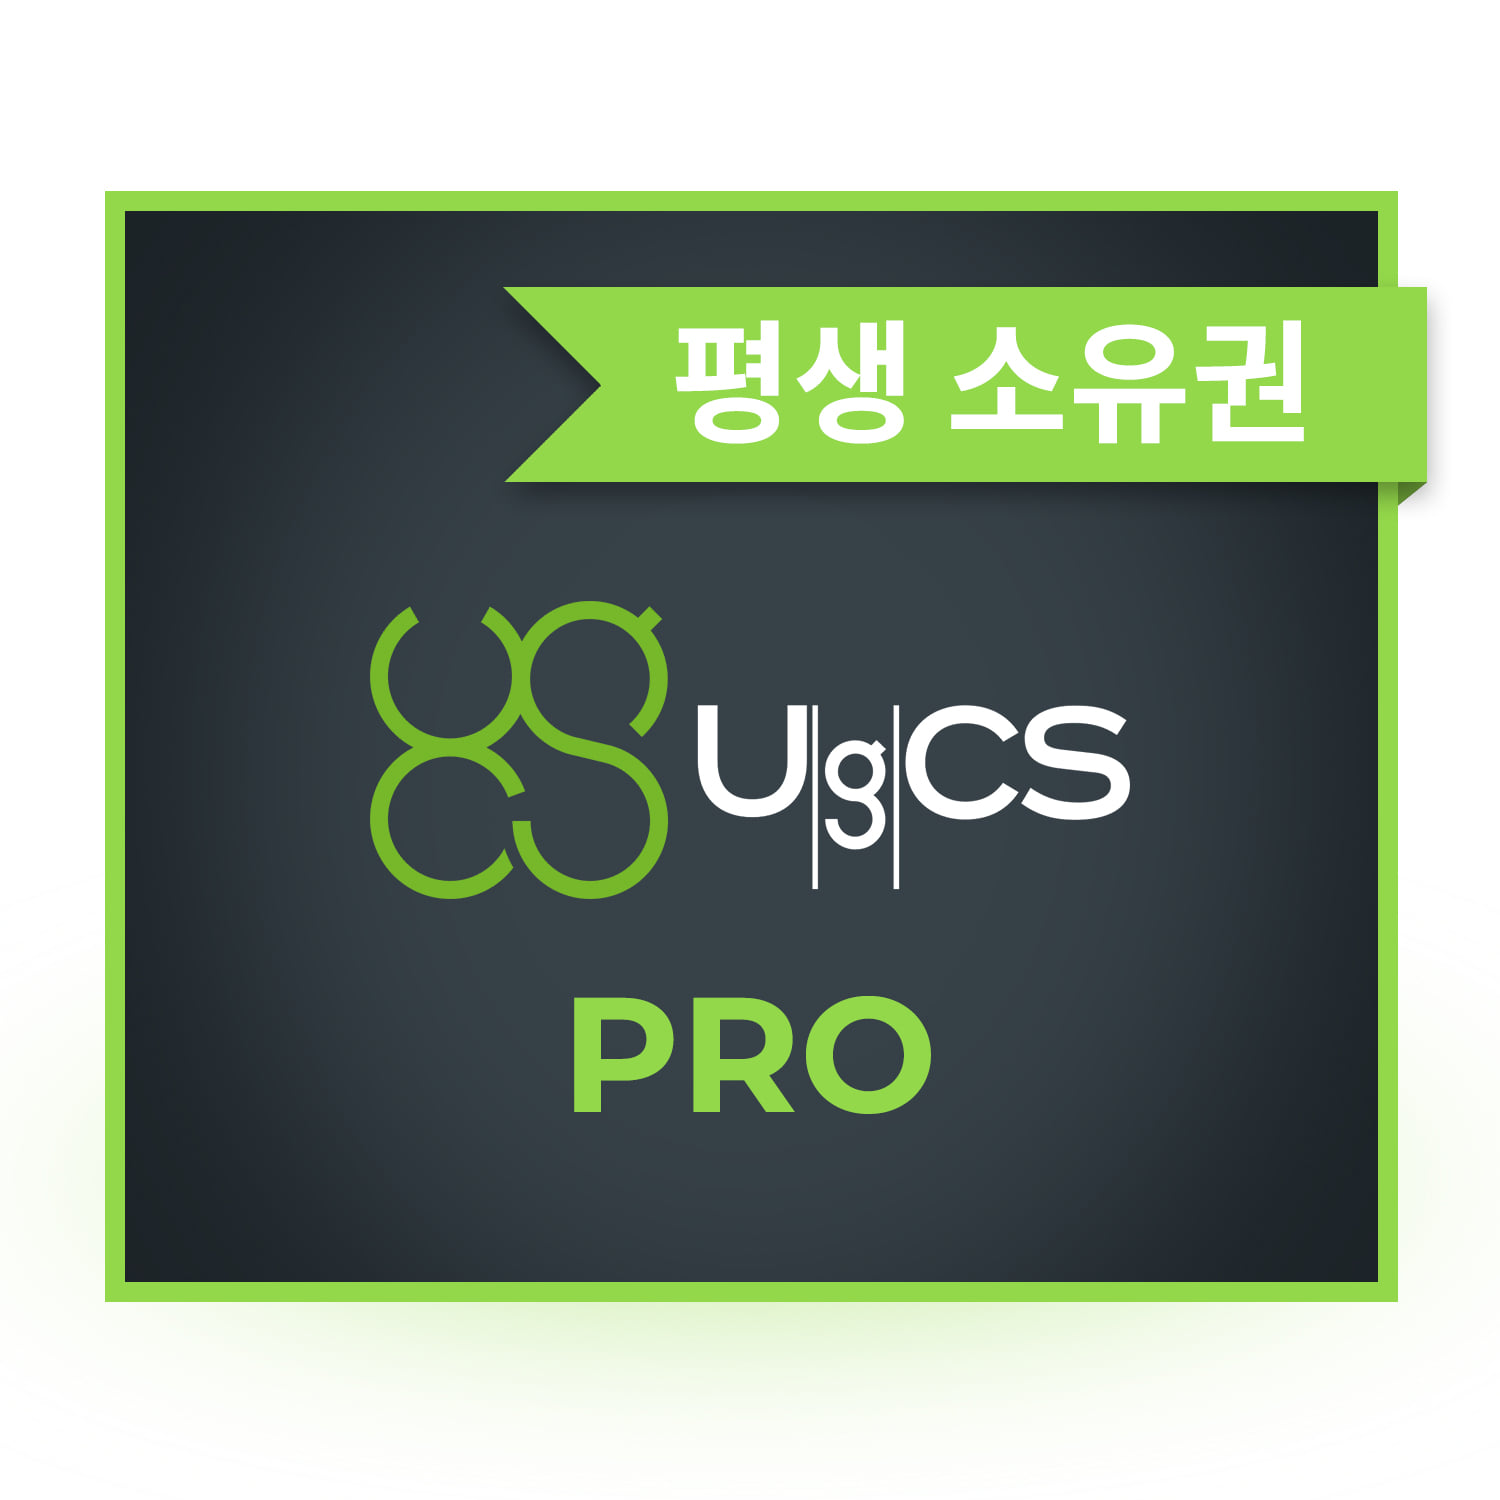 UgCS Pro 드론관제 측량 소프트웨어 평생소유 헬셀